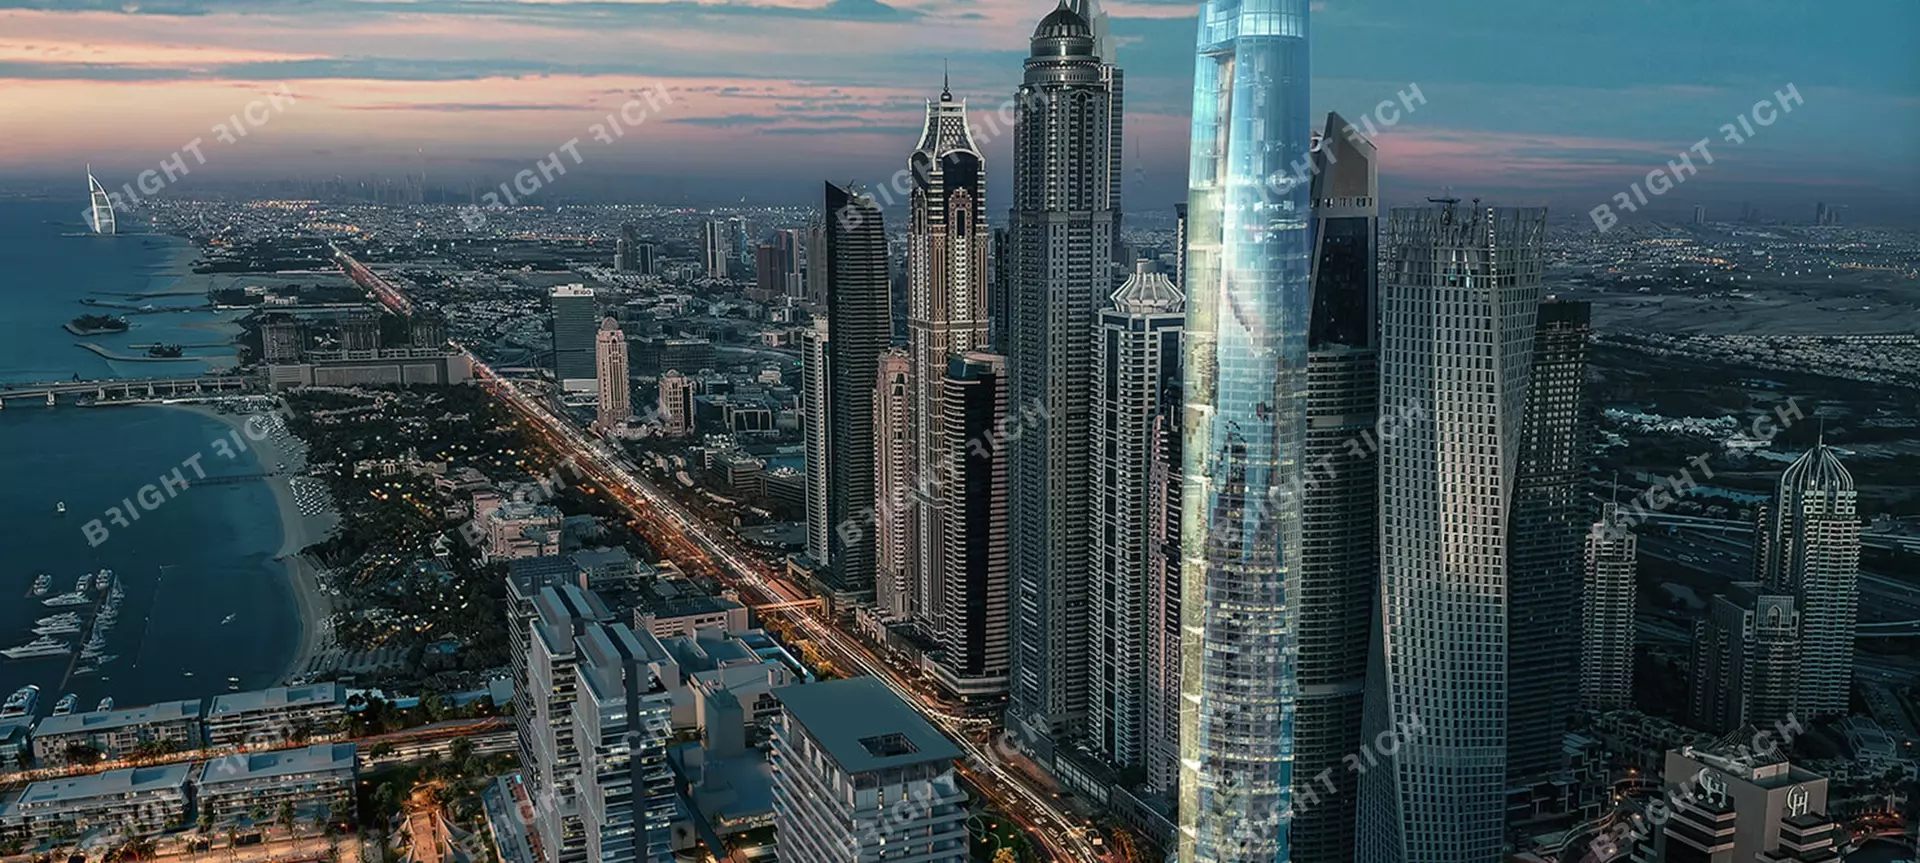 Ciel, апарт-комплекс в Дубае - 0